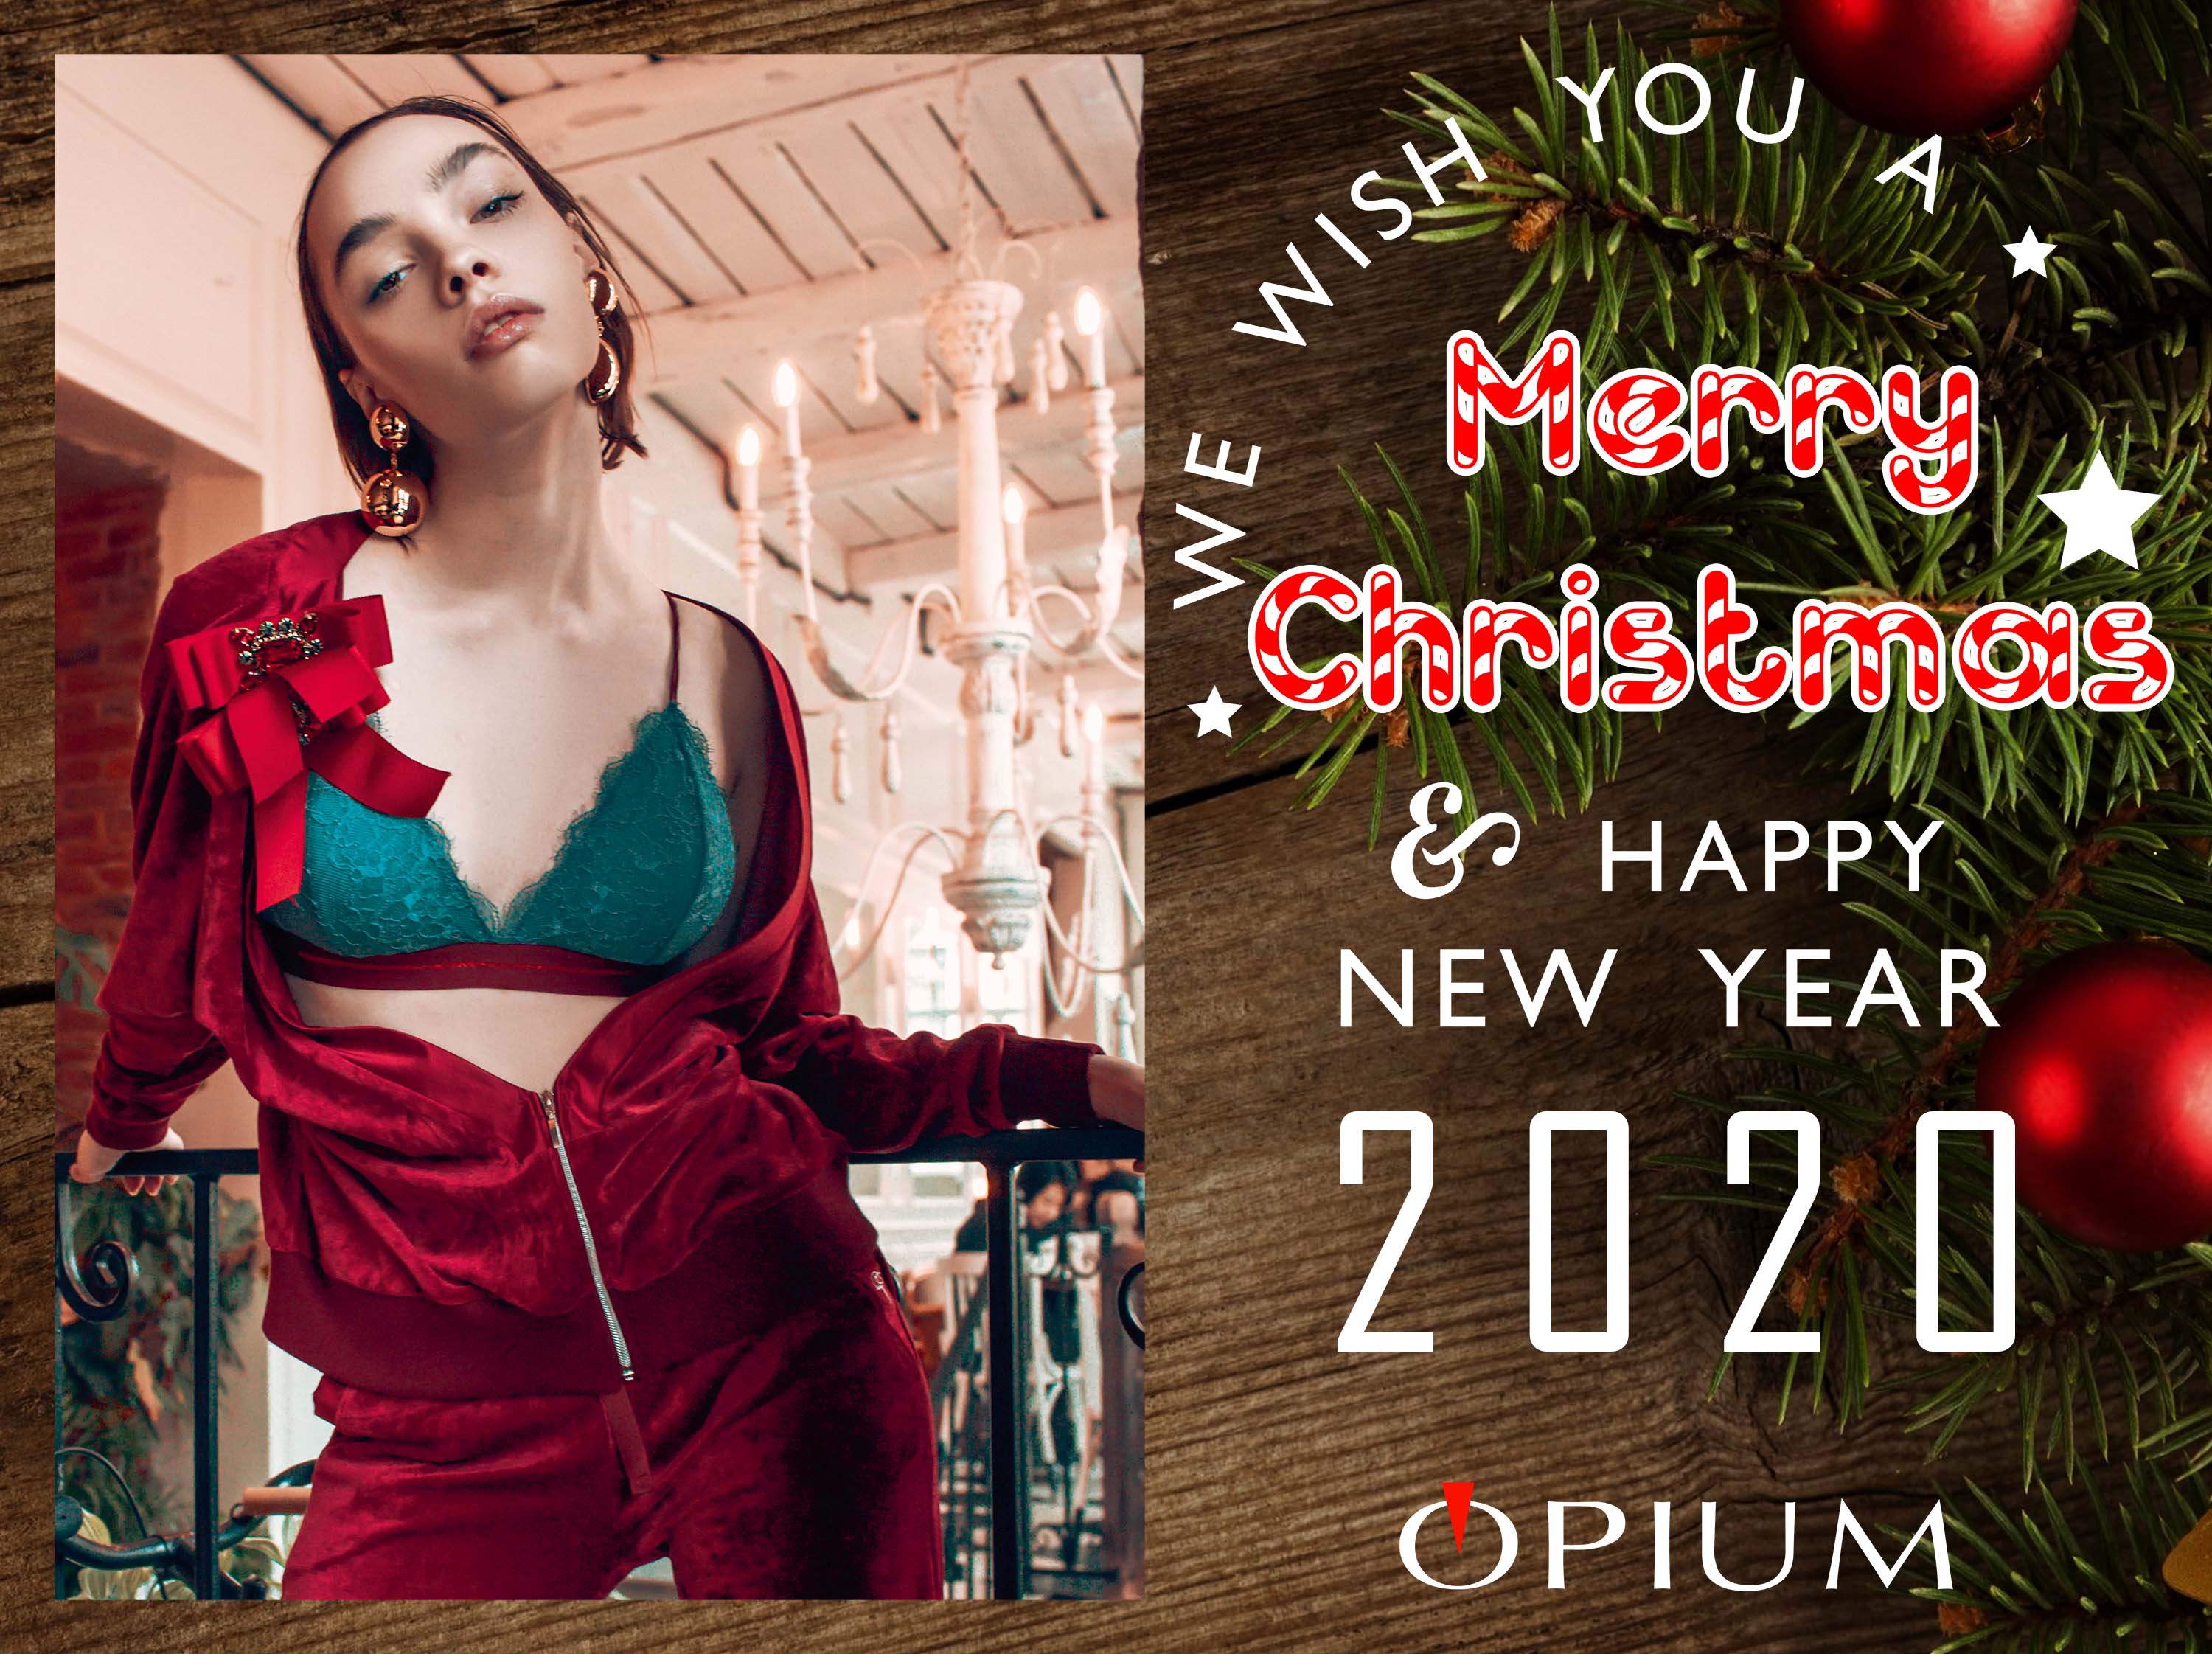 Opium поздравляет всех с Новым 2020 годом!!!